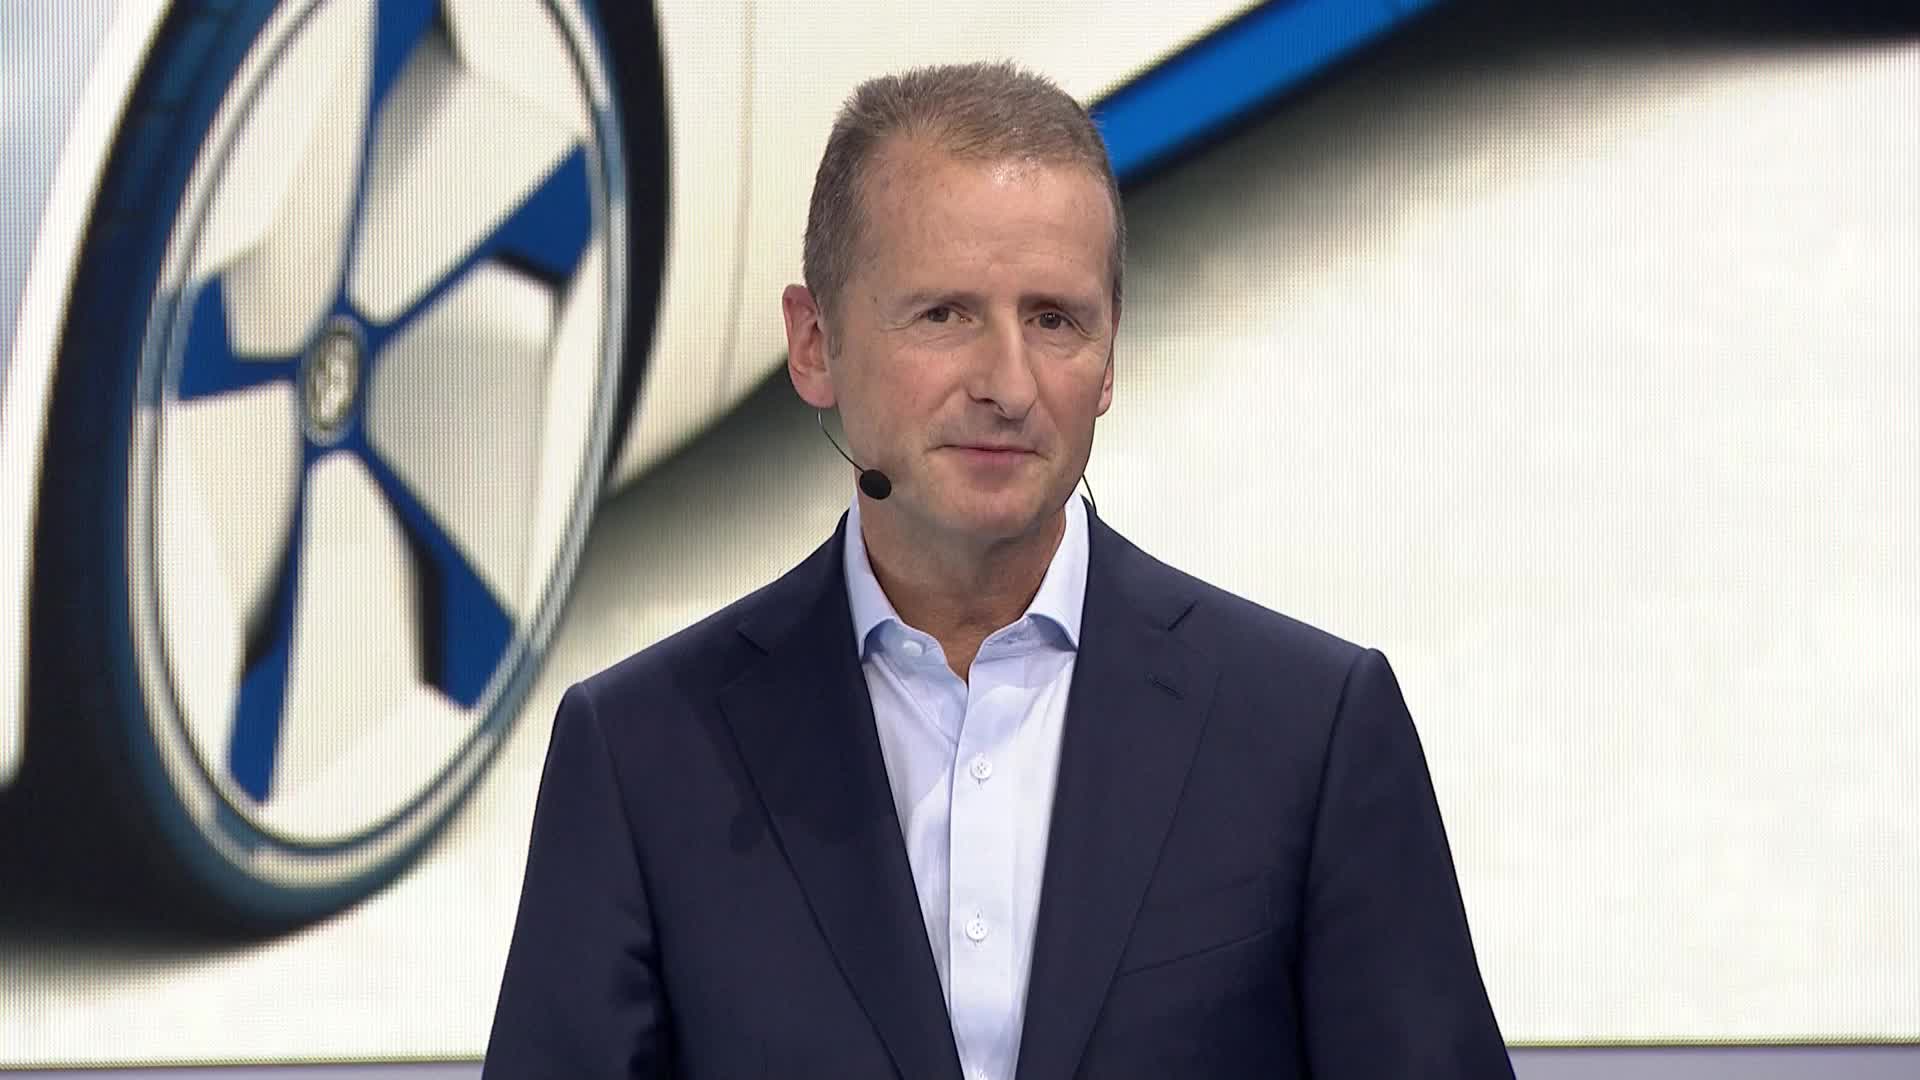 Pressekonferenz Paris 2016: Rede Dr. Herbert Diess, Vorstandsvorsitzender der Marke Volkswagen - Teil 2